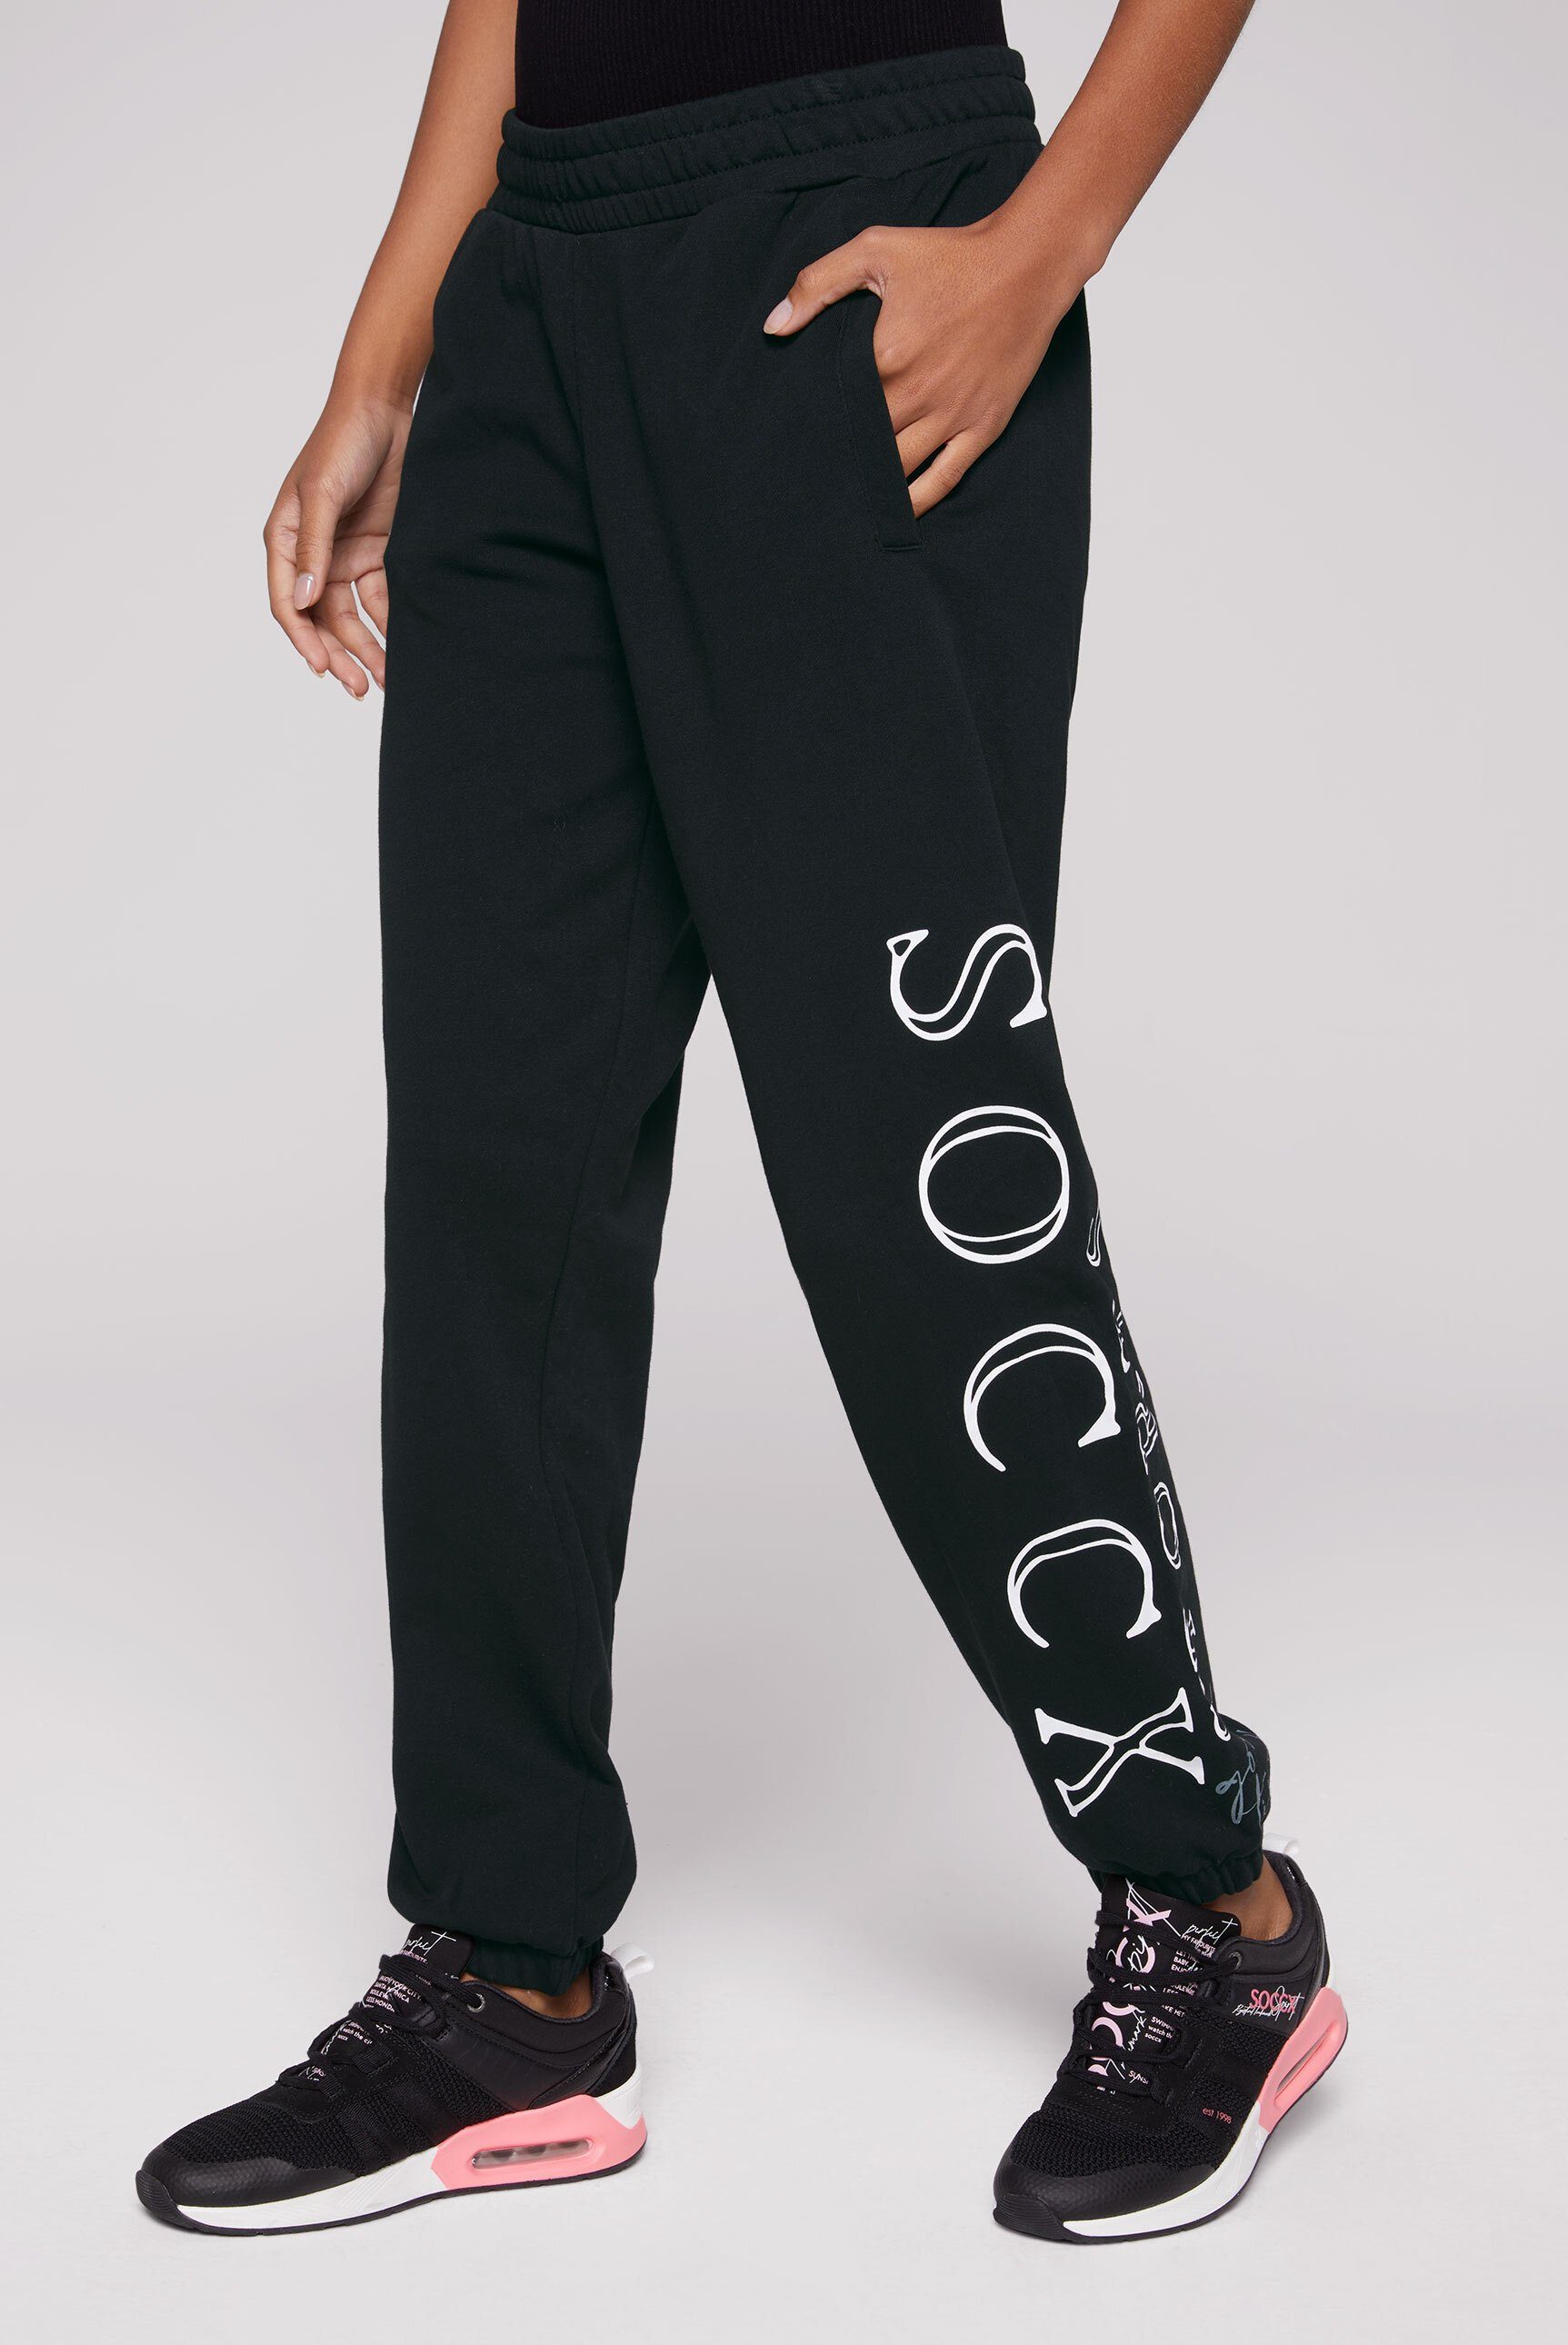 SOCCX Sporthose mit Elastikbund und Kordel, Seitliche Einschubtaschen